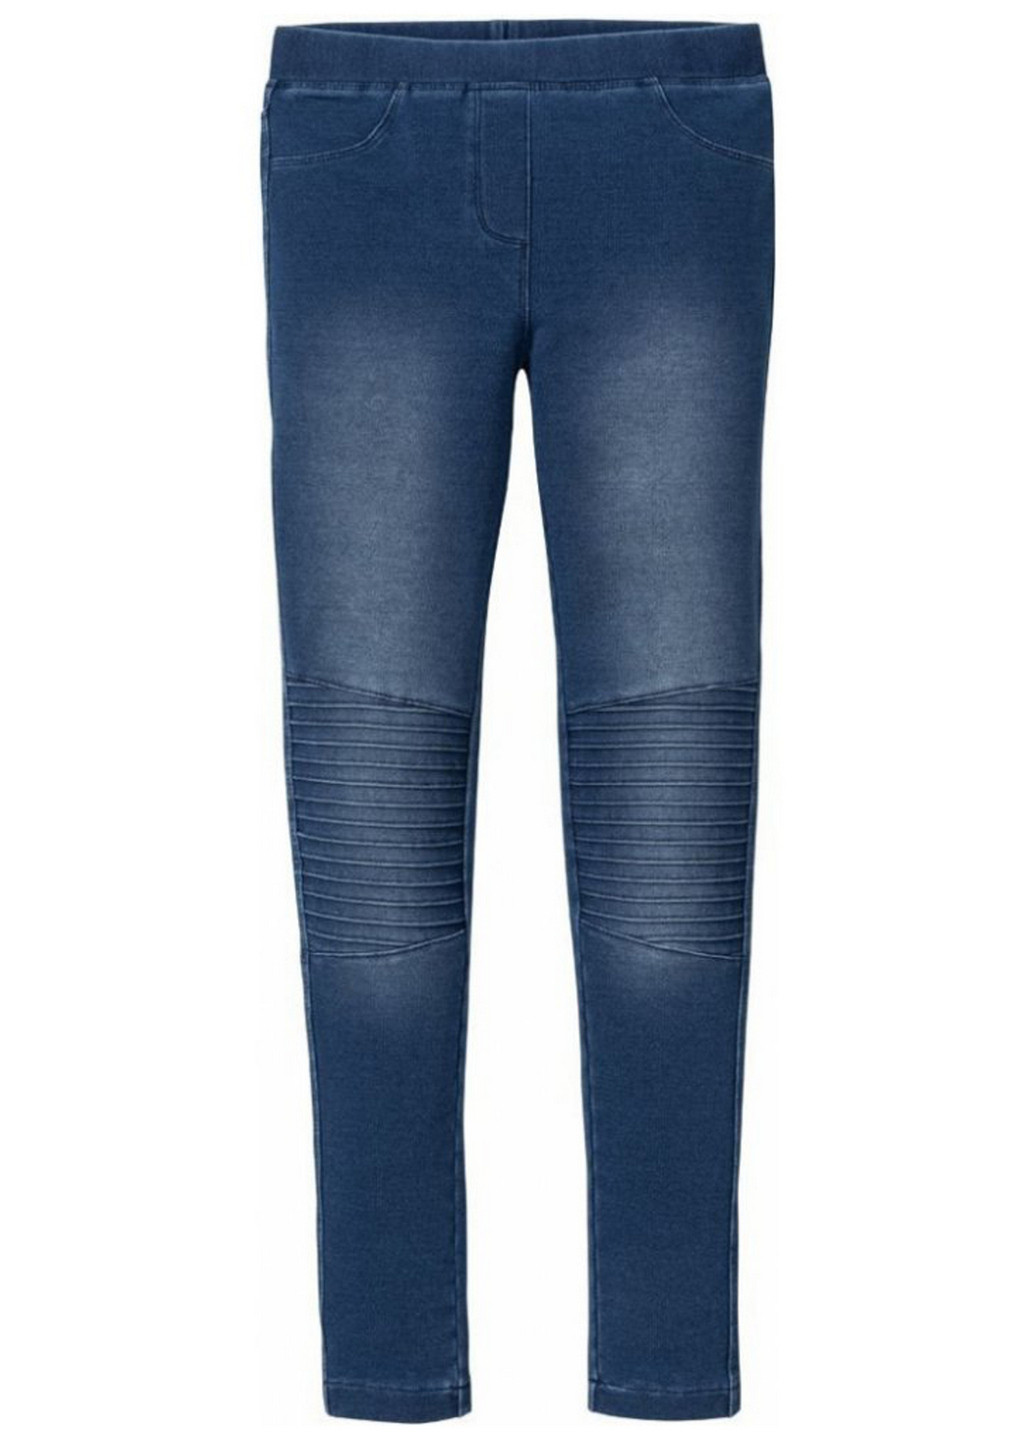 Джеггінси Pepperts градієнти сині джинсові трикотаж